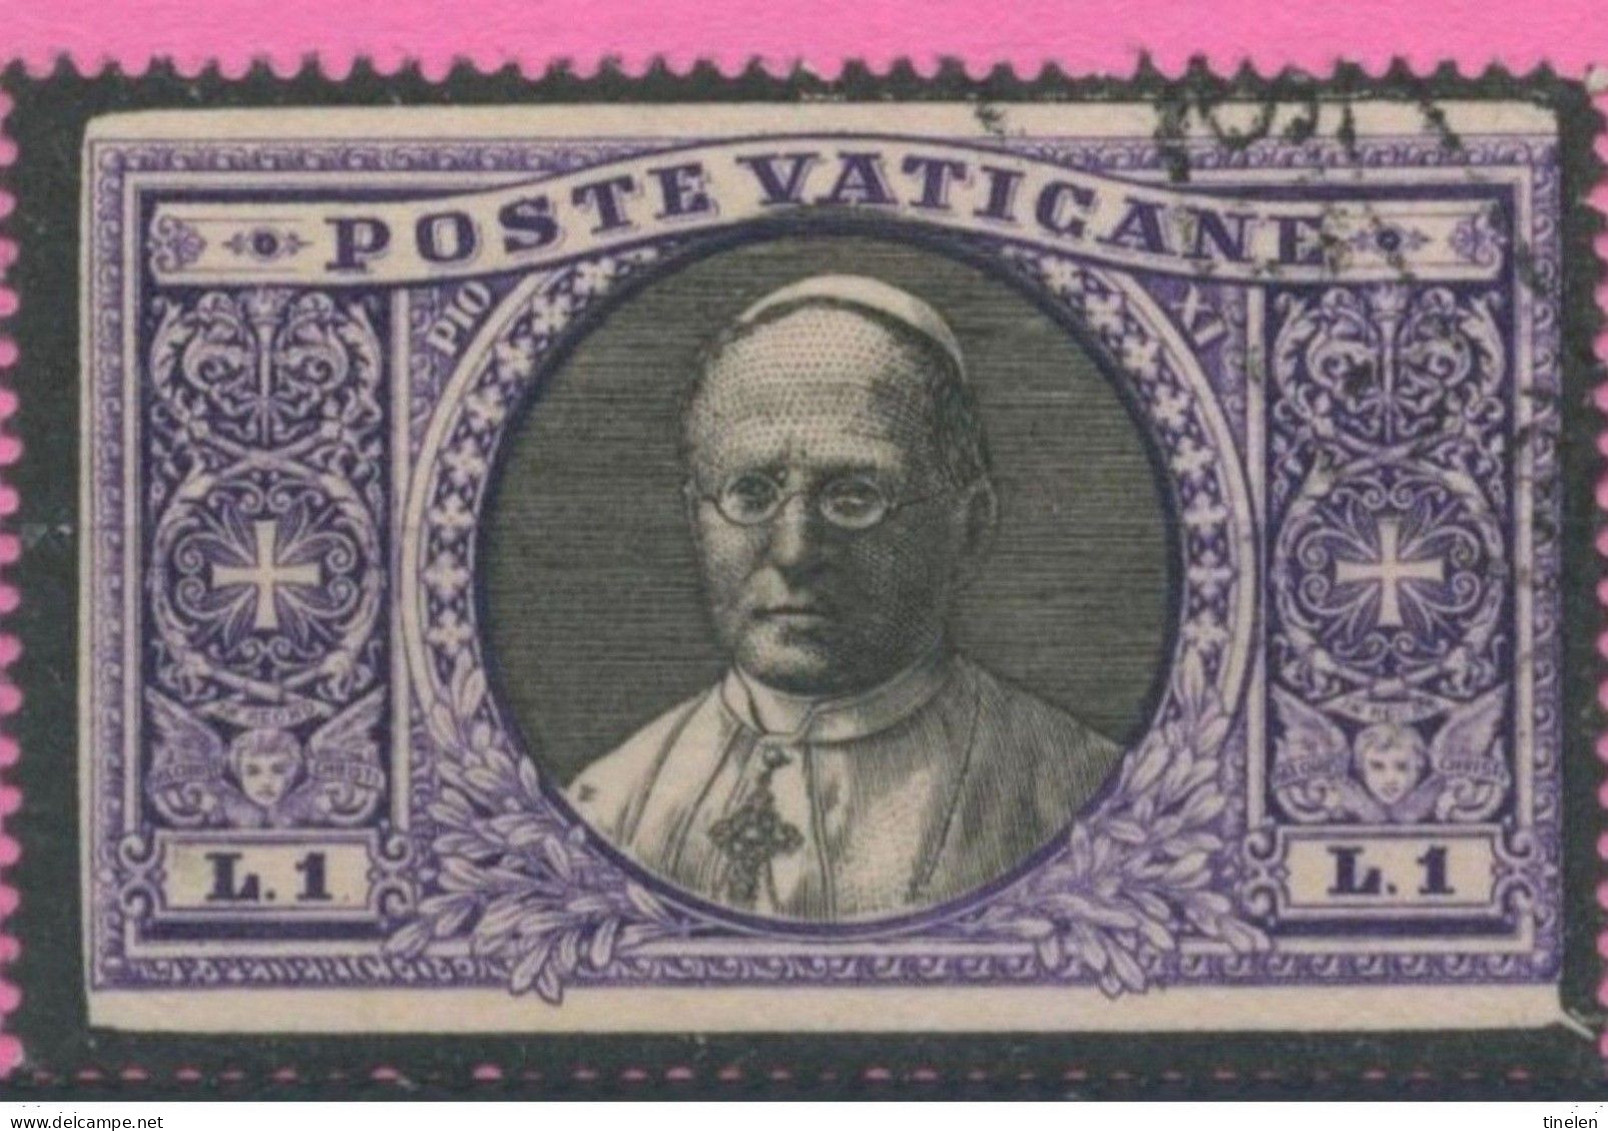 Vaticano - 1939 - Raro Esemplare Della Serie Giardini E Medaglioni Del 1933  Lire 1 Listato A Lutto - Variedades & Curiosidades